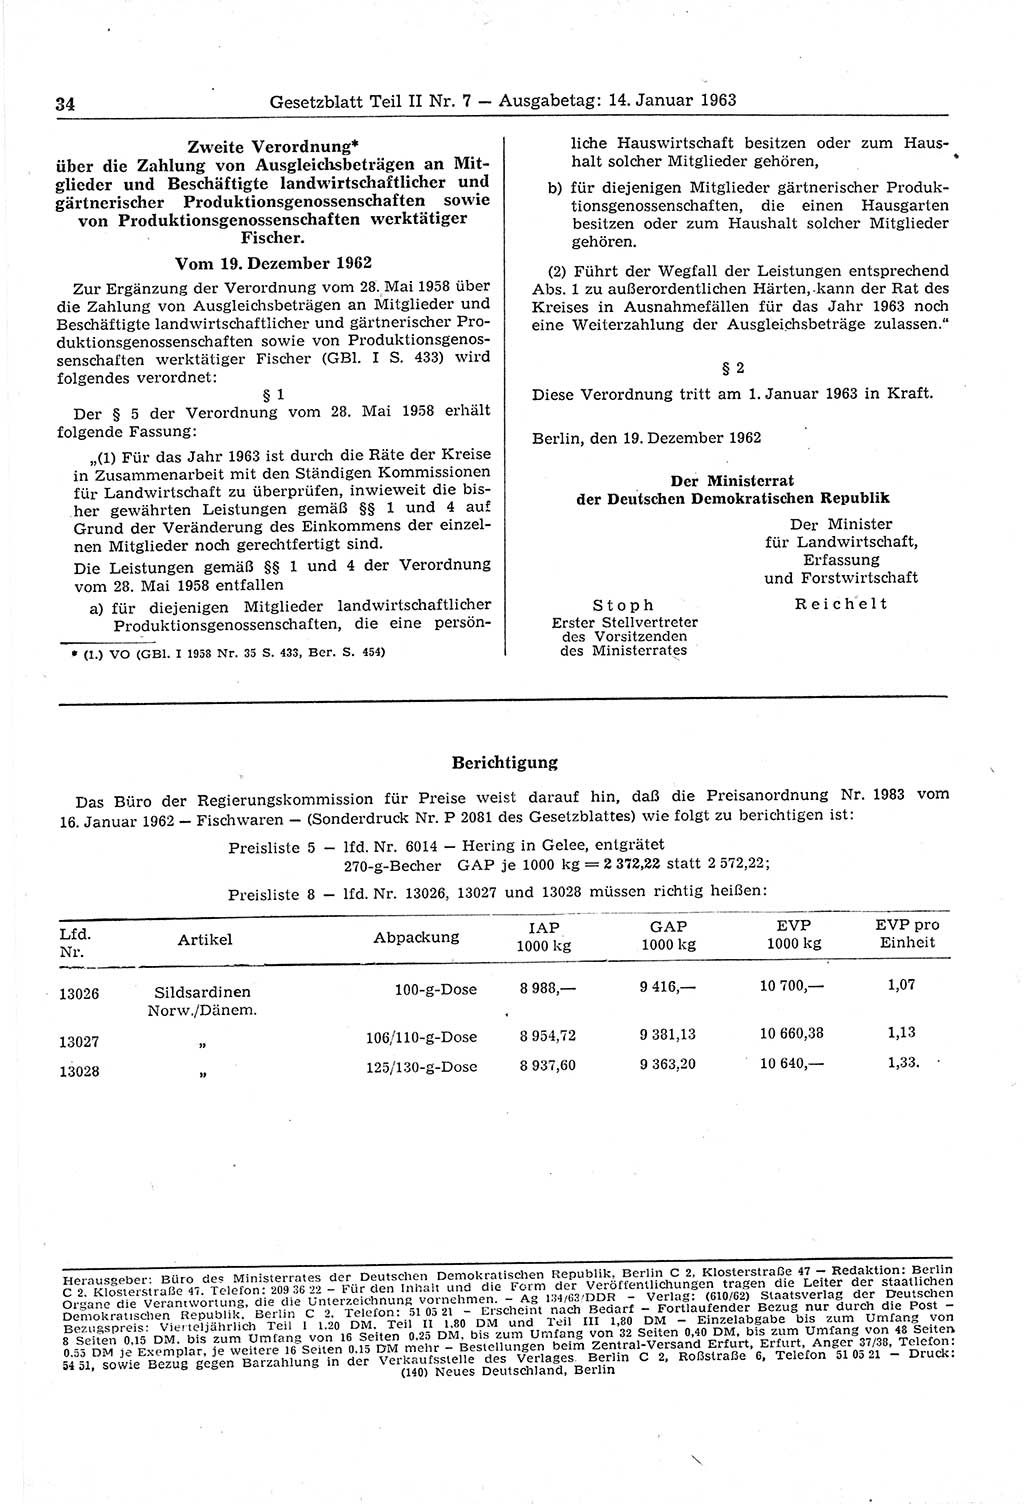 Gesetzblatt (GBl.) der Deutschen Demokratischen Republik (DDR) Teil ⅠⅠ 1963, Seite 34 (GBl. DDR ⅠⅠ 1963, S. 34)